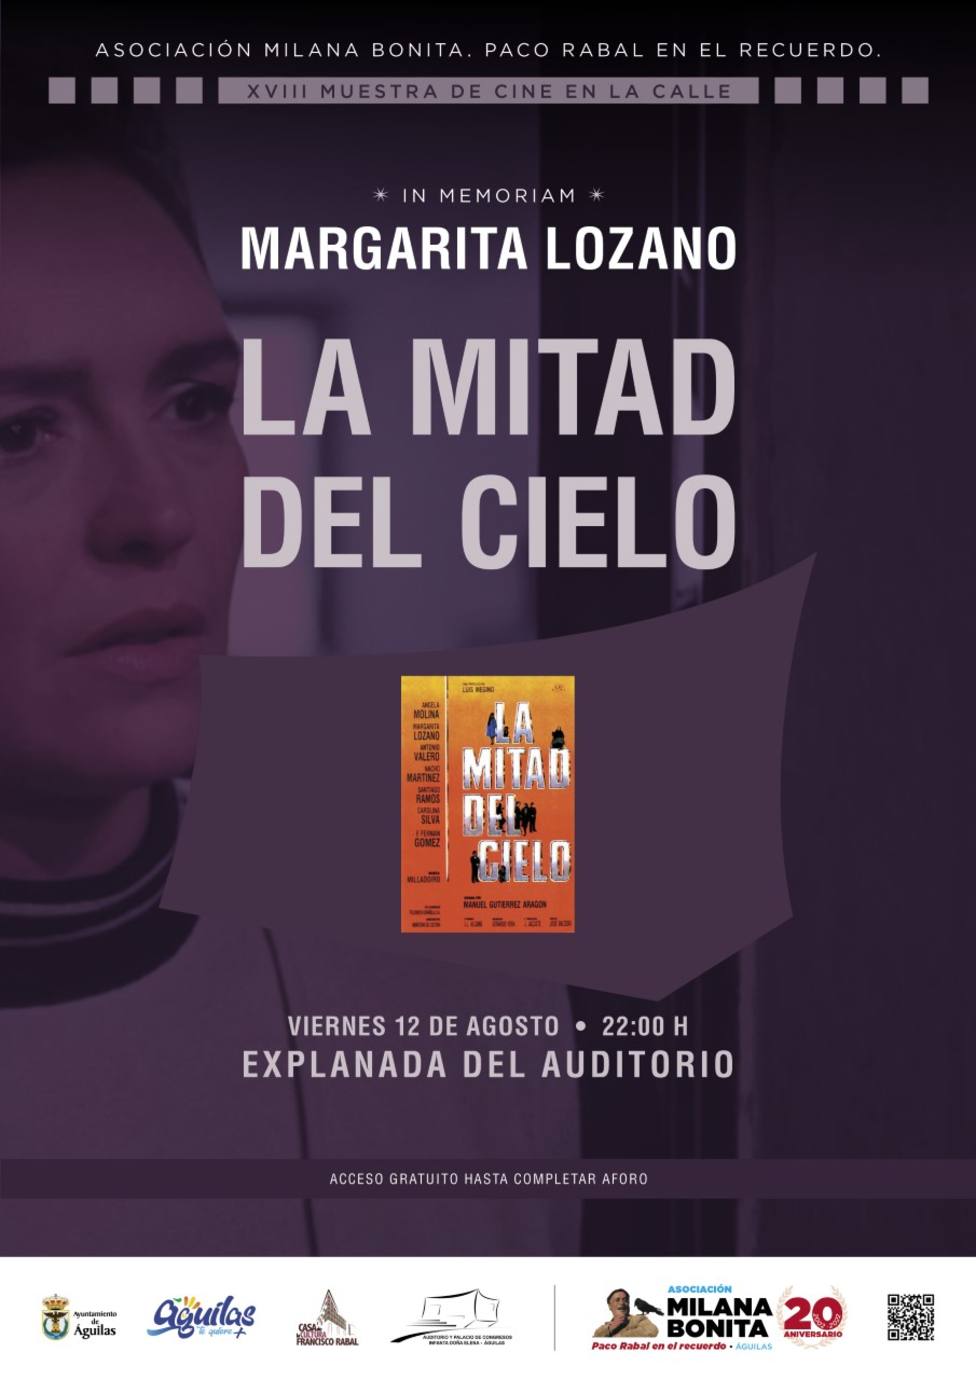 Milana Bonita homenajea y recuerda a Margarita Lozano